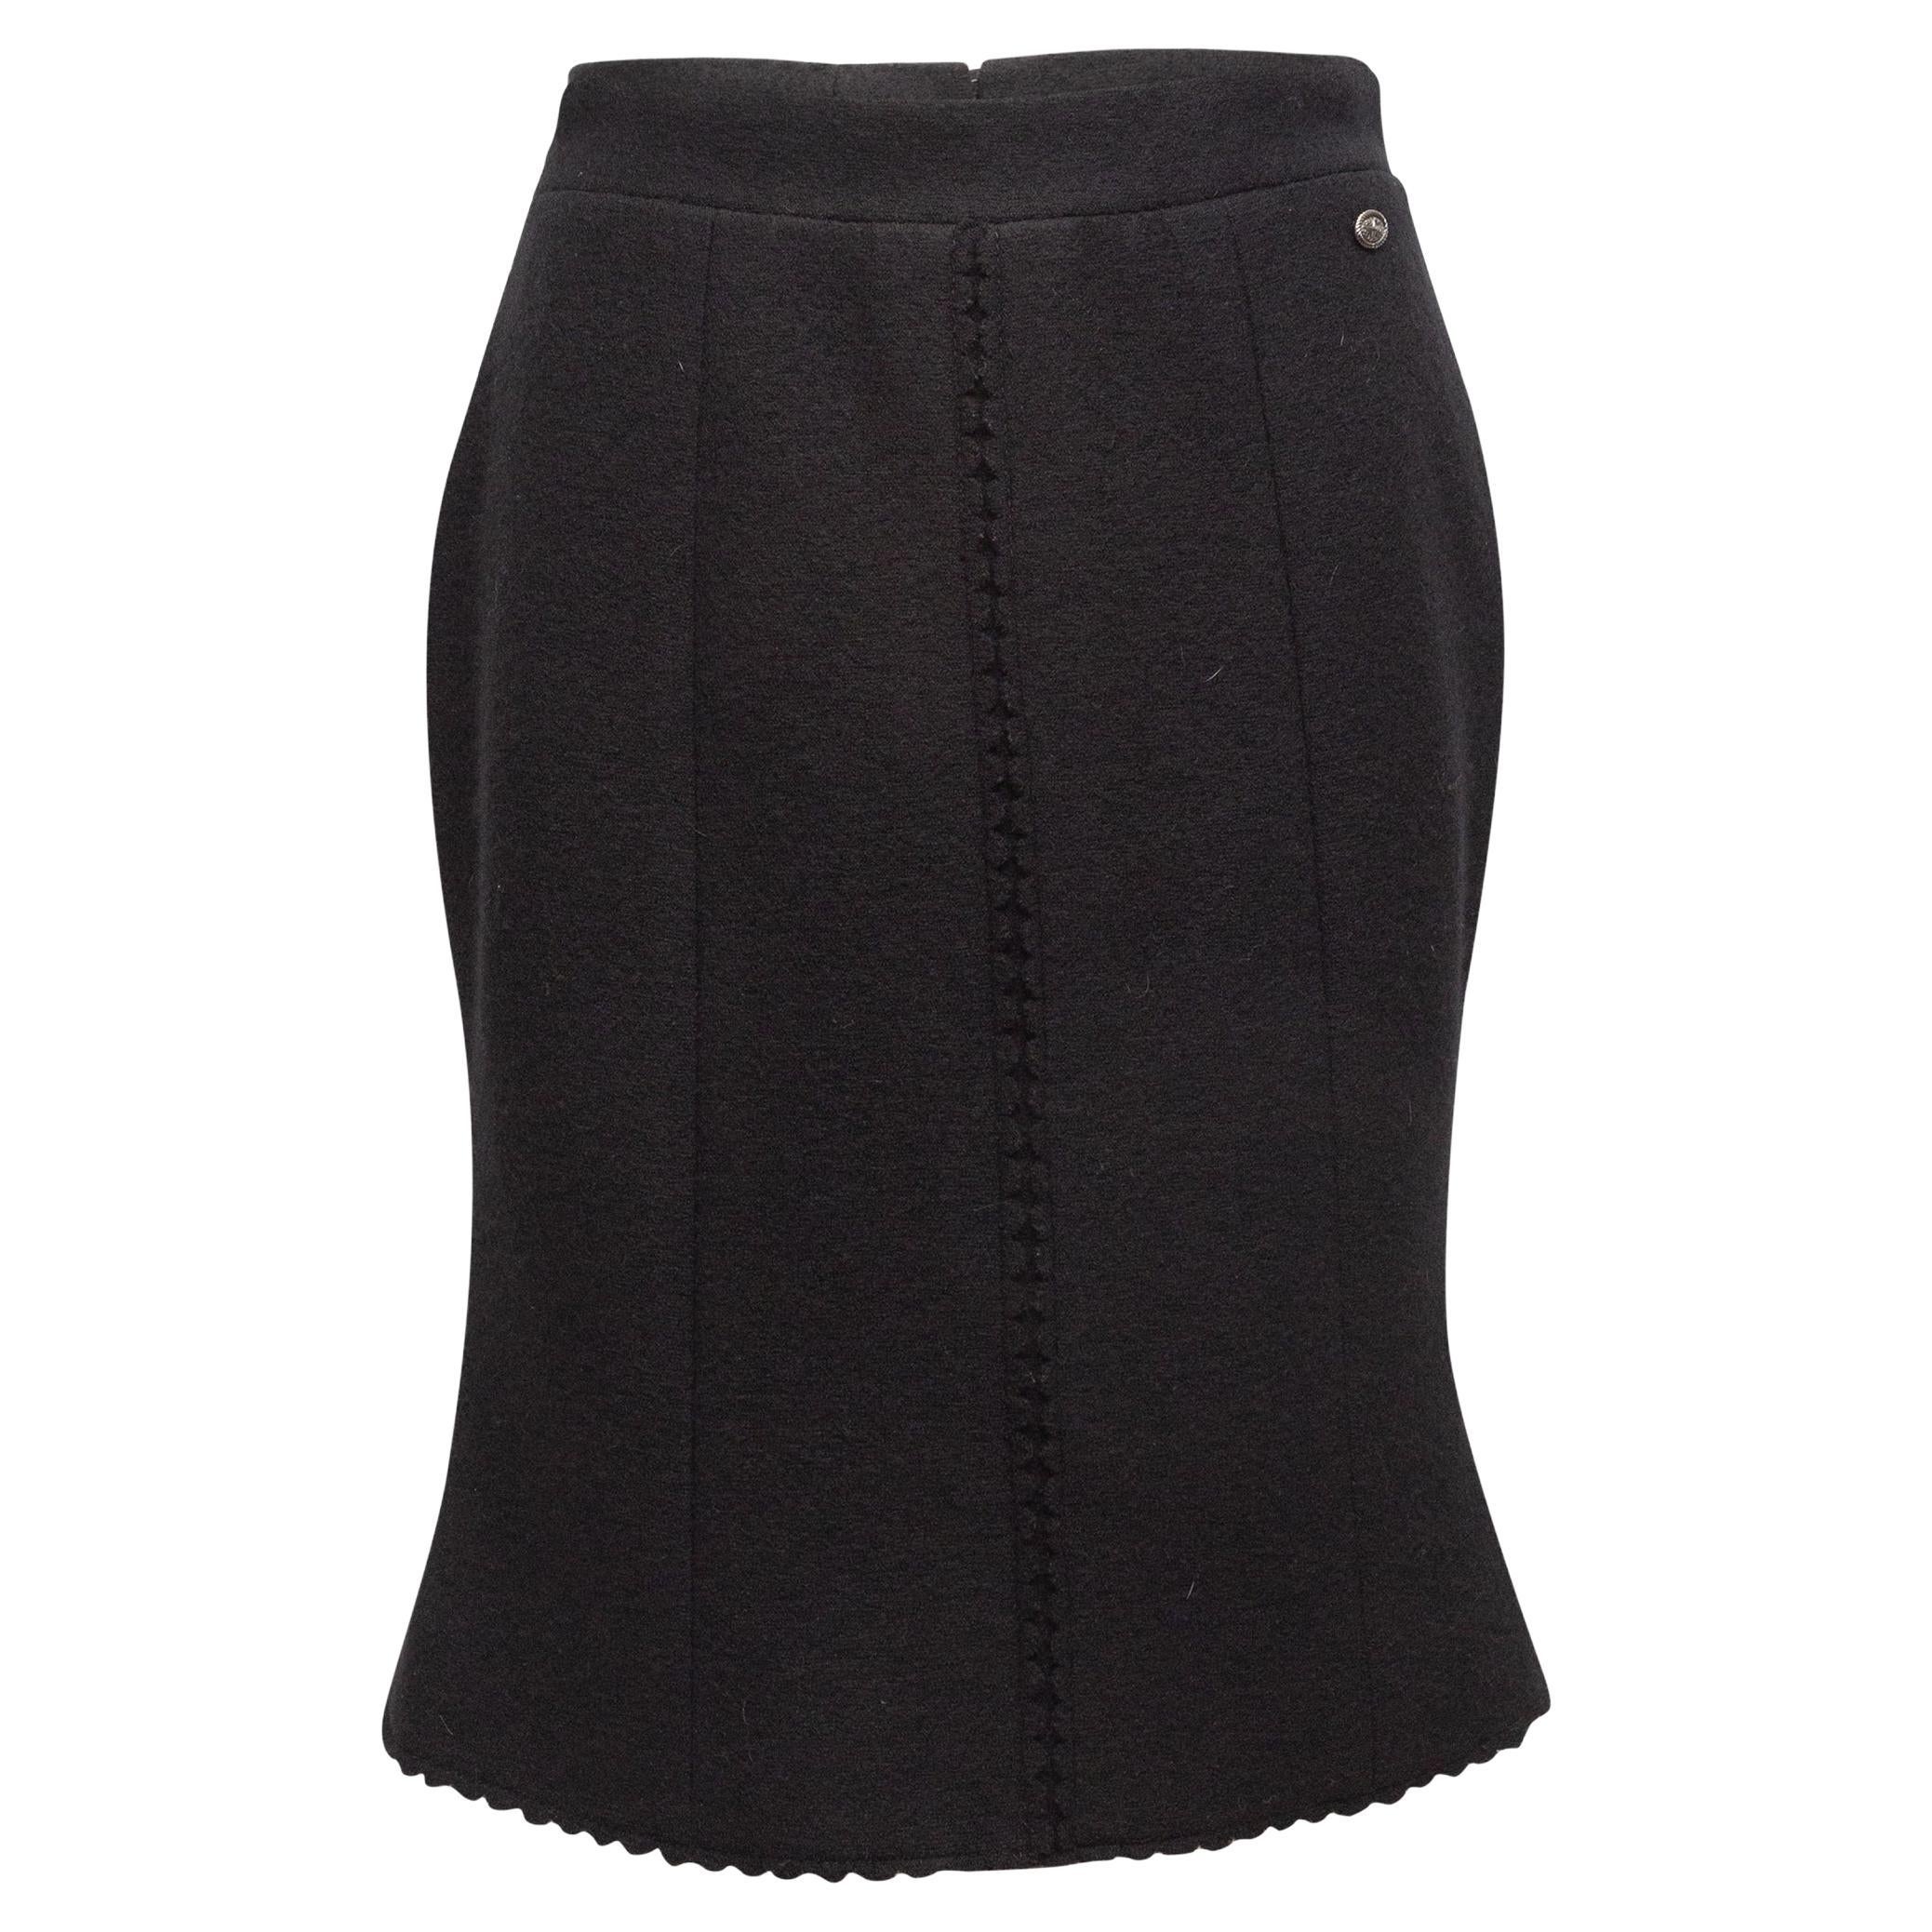 Chanel Black Wool Scalloped Skirt